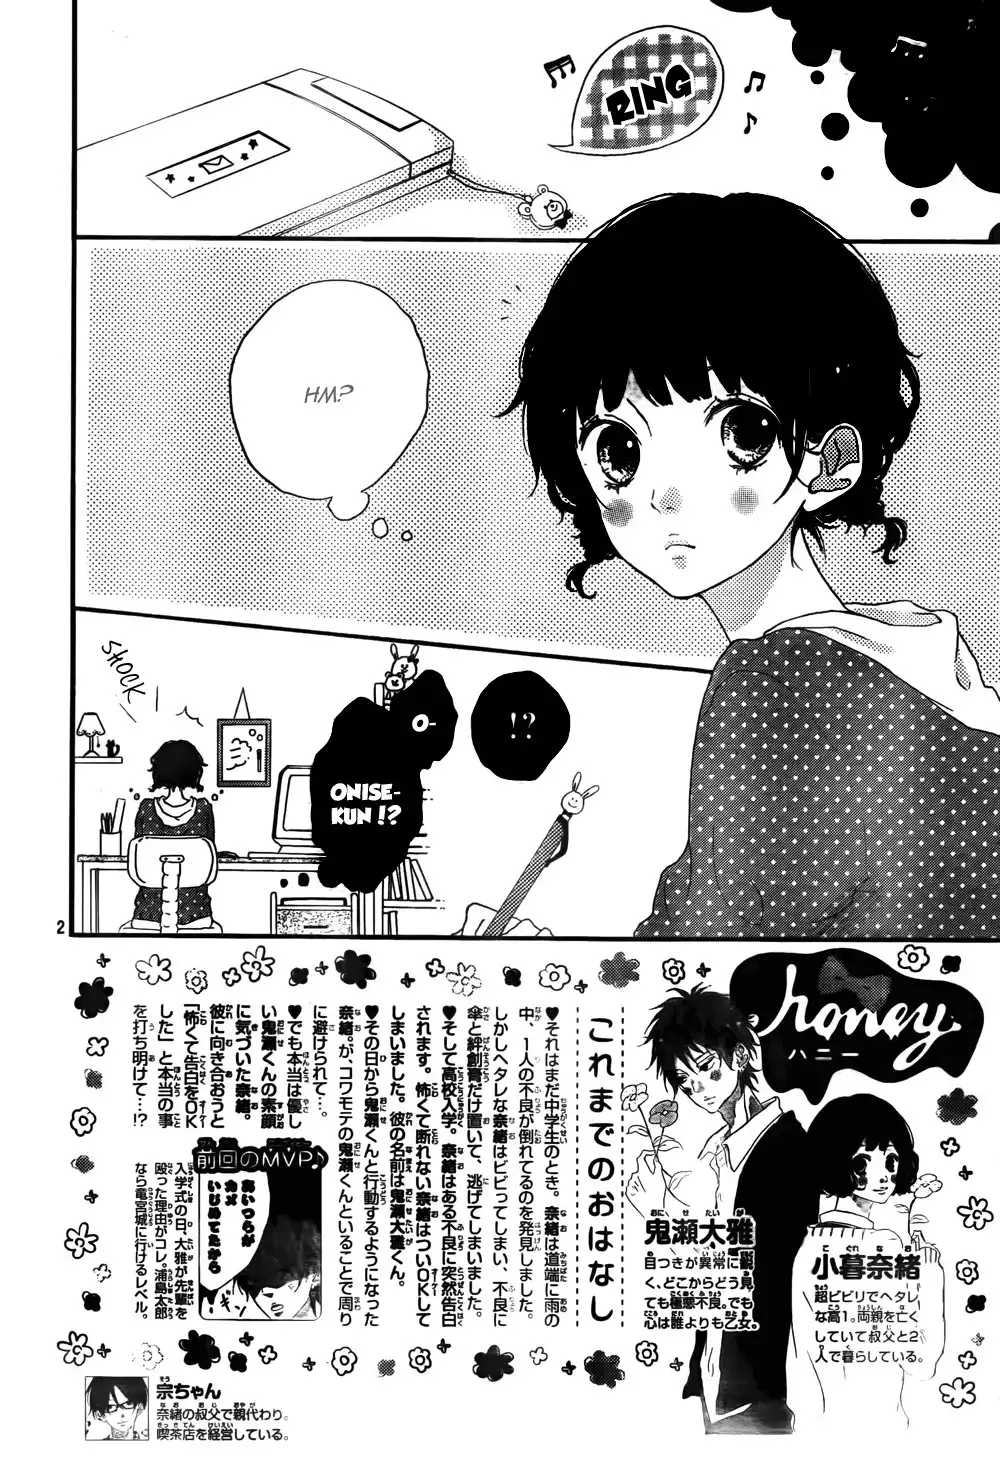 Honey (MEGURO Amu) Chapter 2